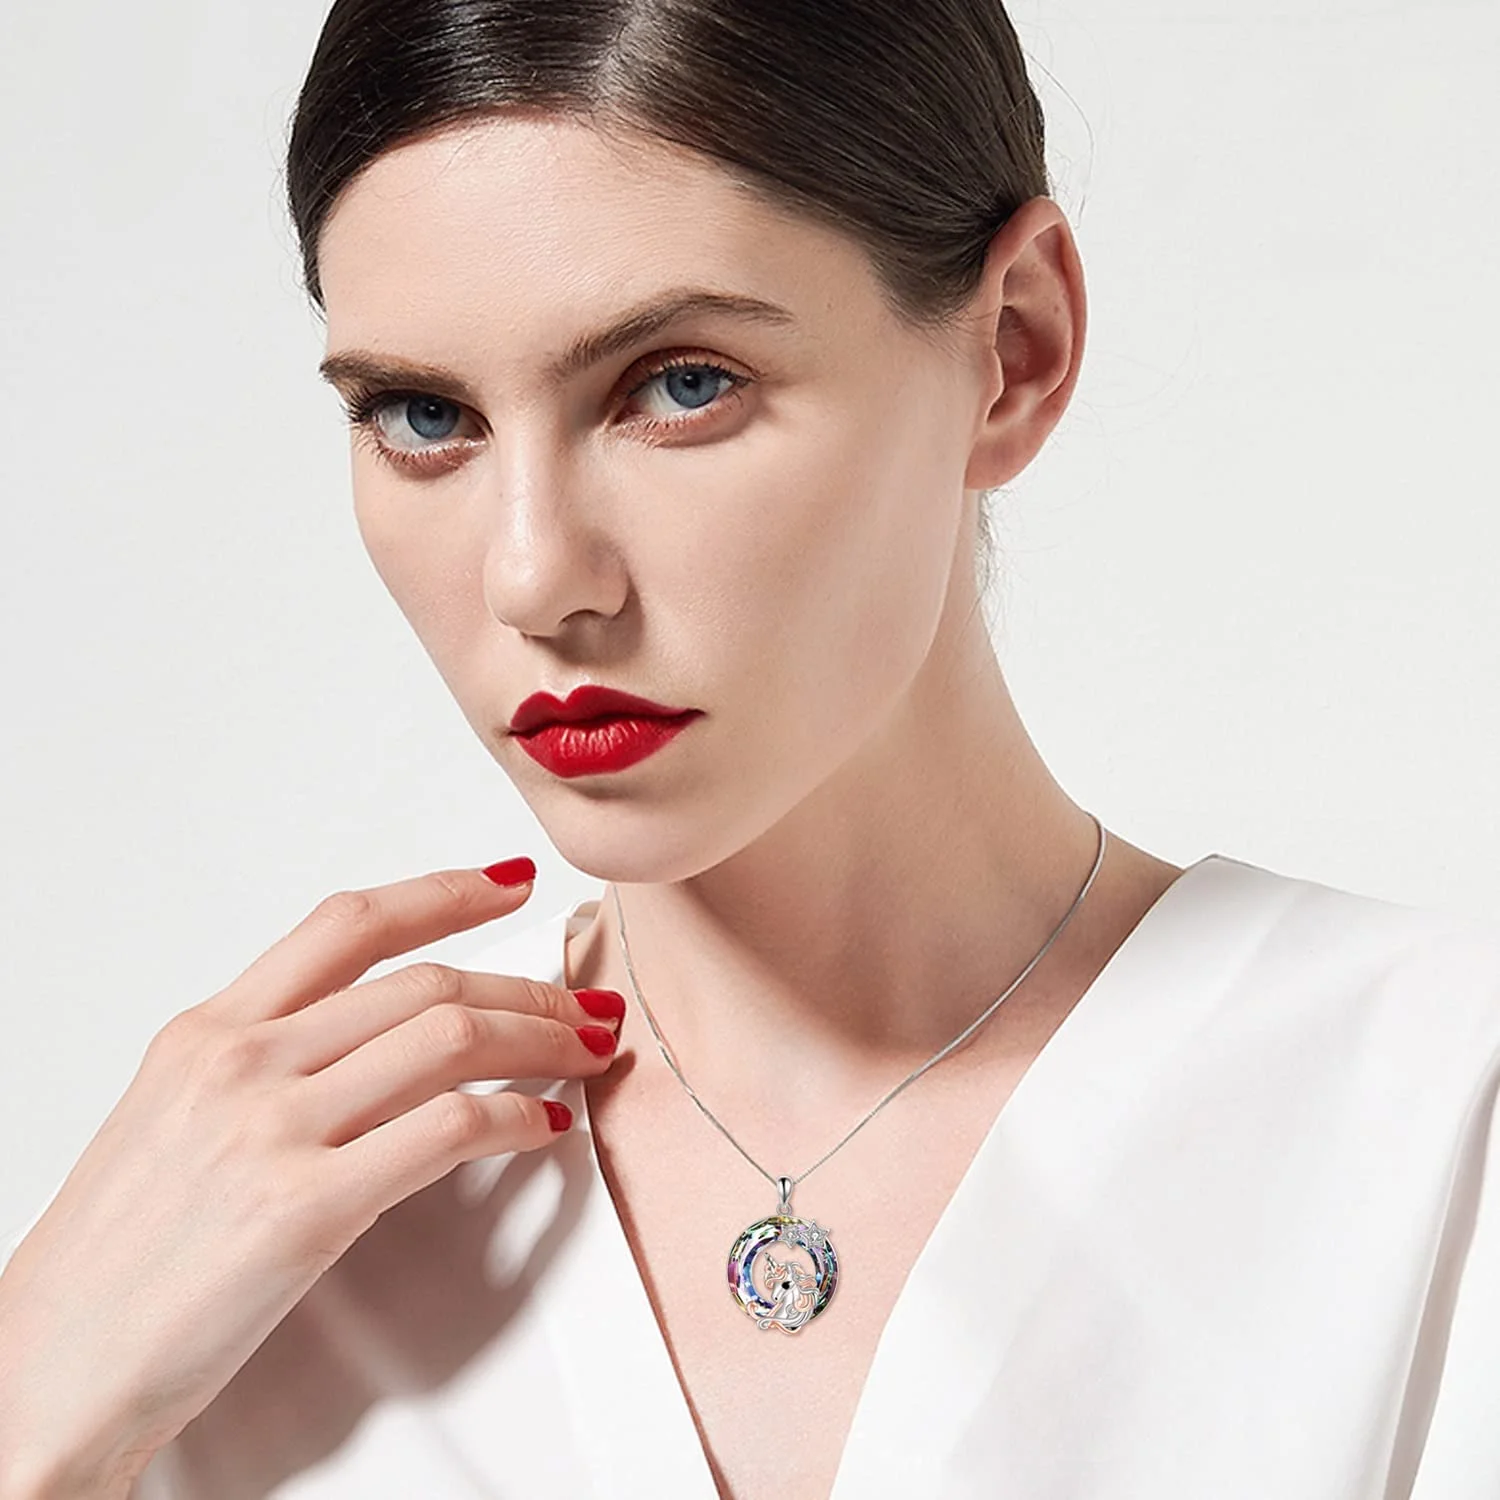 Lucky Unicorn Swarovski Crystal Necklace for Women Girls Jewelry Gift